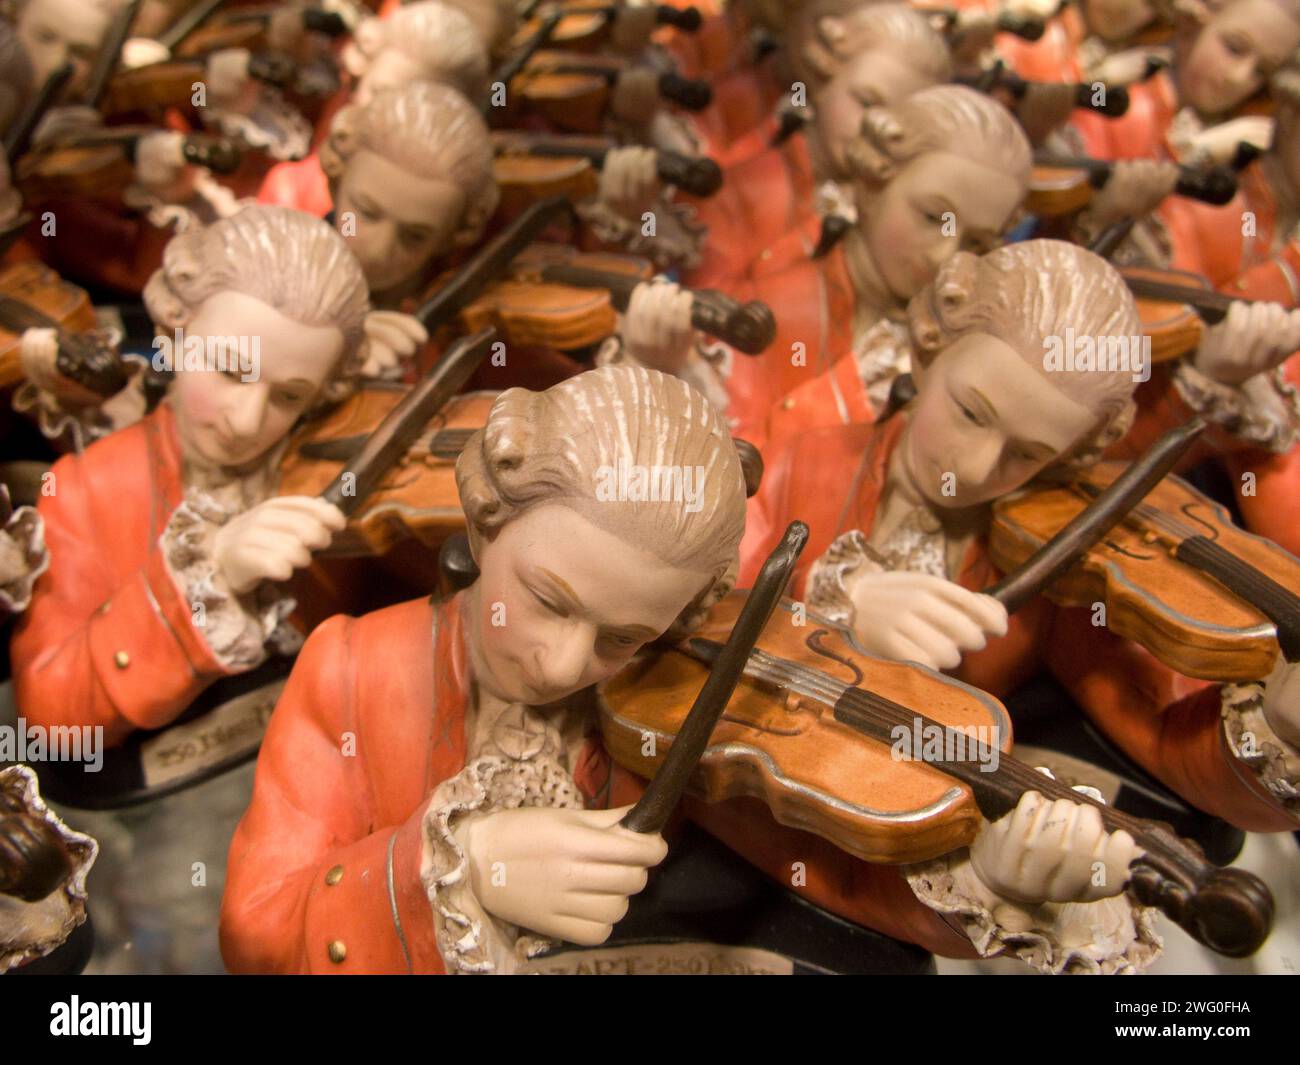 Mozart ceramic souvenirs, Vienna, Austria. Stock Photo